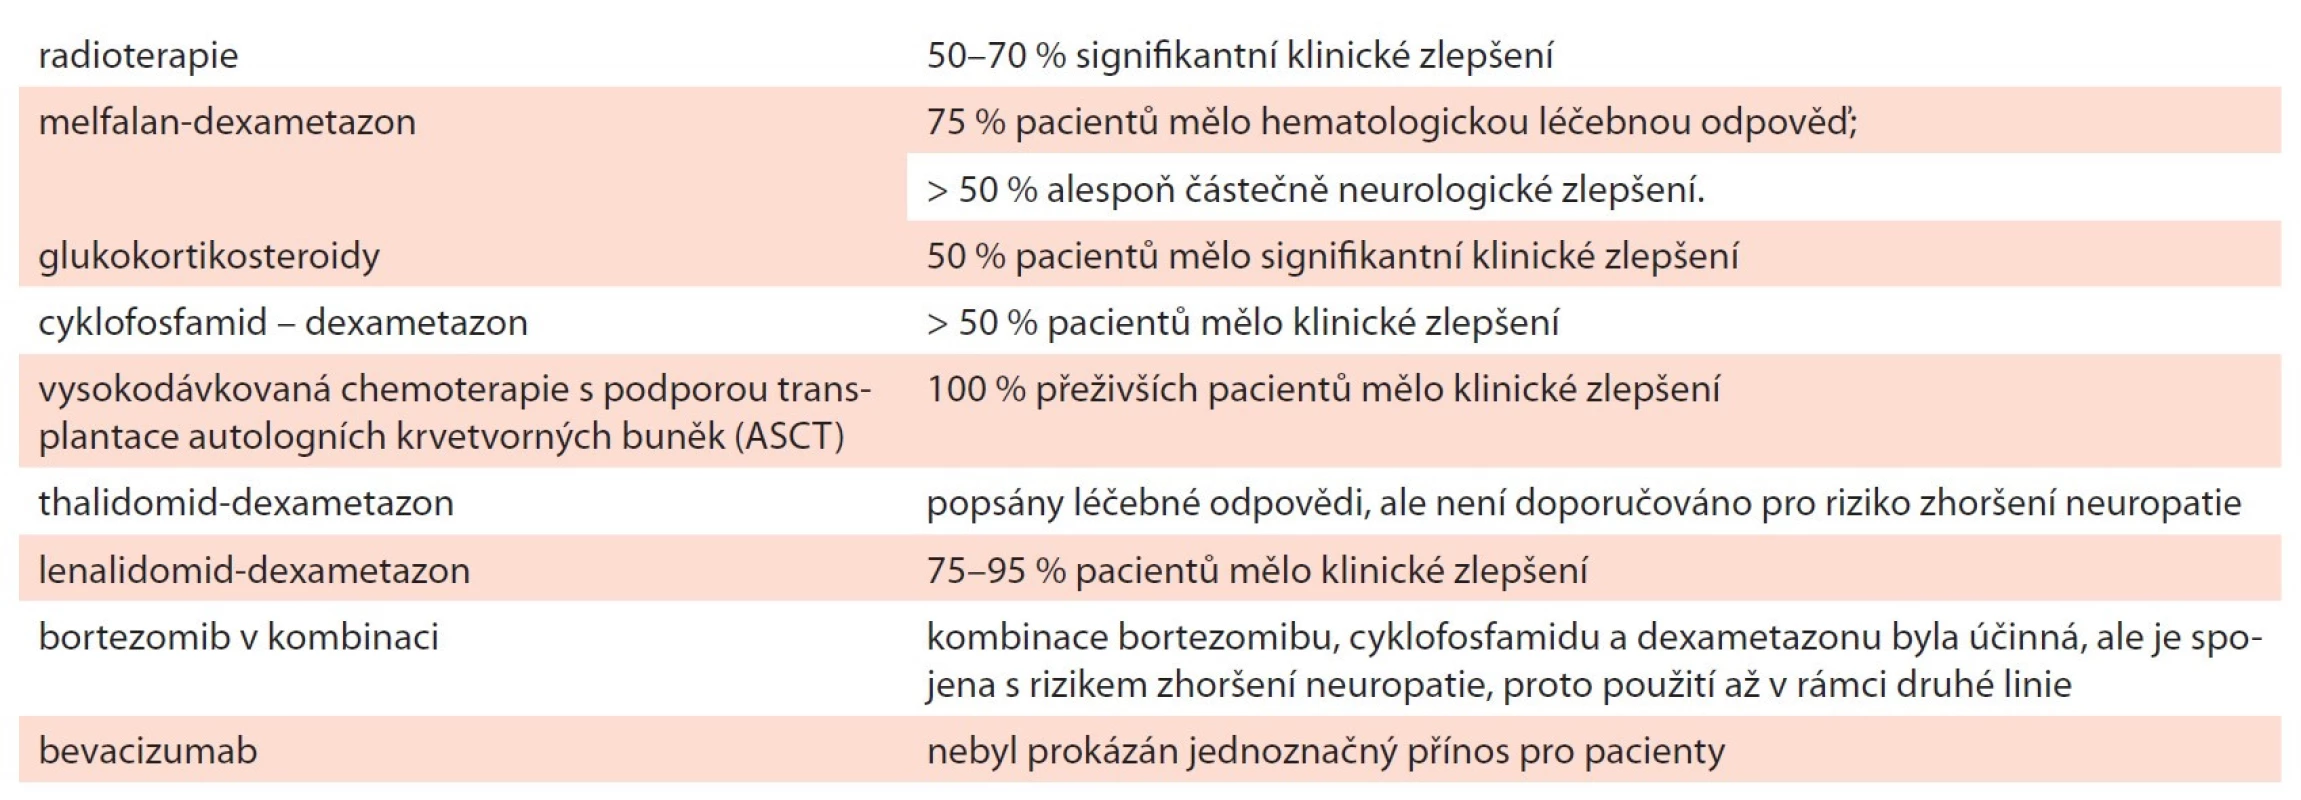 Přehled používaných léčebných postupů pro nemocné s POEMS syndromem – mezinárodní doporučení z
roku 2019 [29].